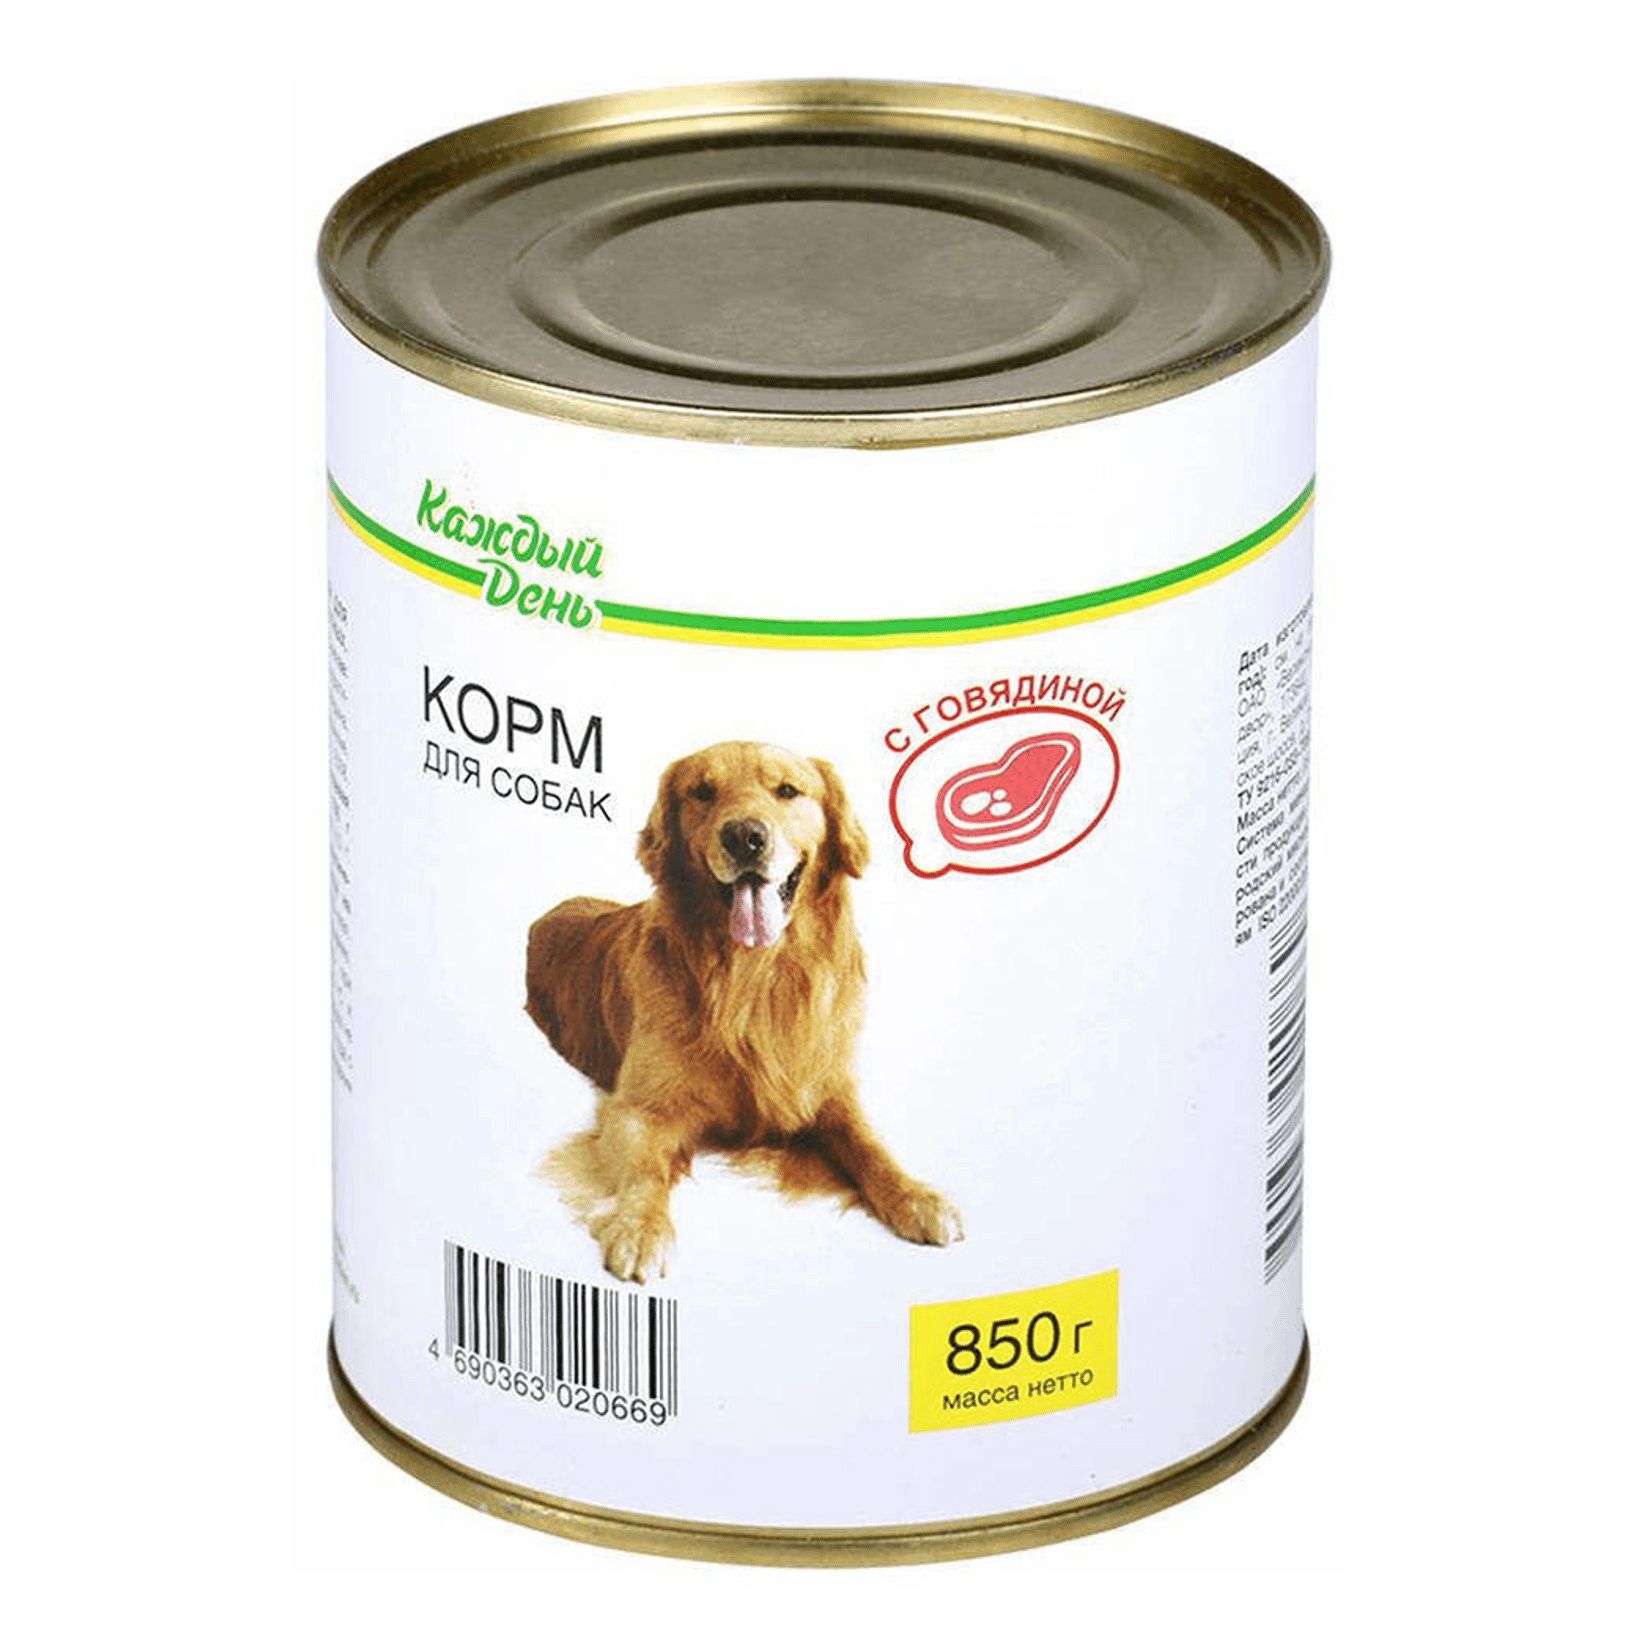 Корм для собак 1st. Корм для собак каждый день консервы для собак с говядиной (0.85 кг) 1 шт.. Корм для собак darsi (0.85 кг) 1 шт. Консервы для собак: говядина и рис. Корм для собак Rocky (0.25 кг) 1 шт. Паштет с говядиной для собак. Корм для собак Aras (0.82 кг) 1 шт. Premium select для собак - говядина с овощами и рисом.